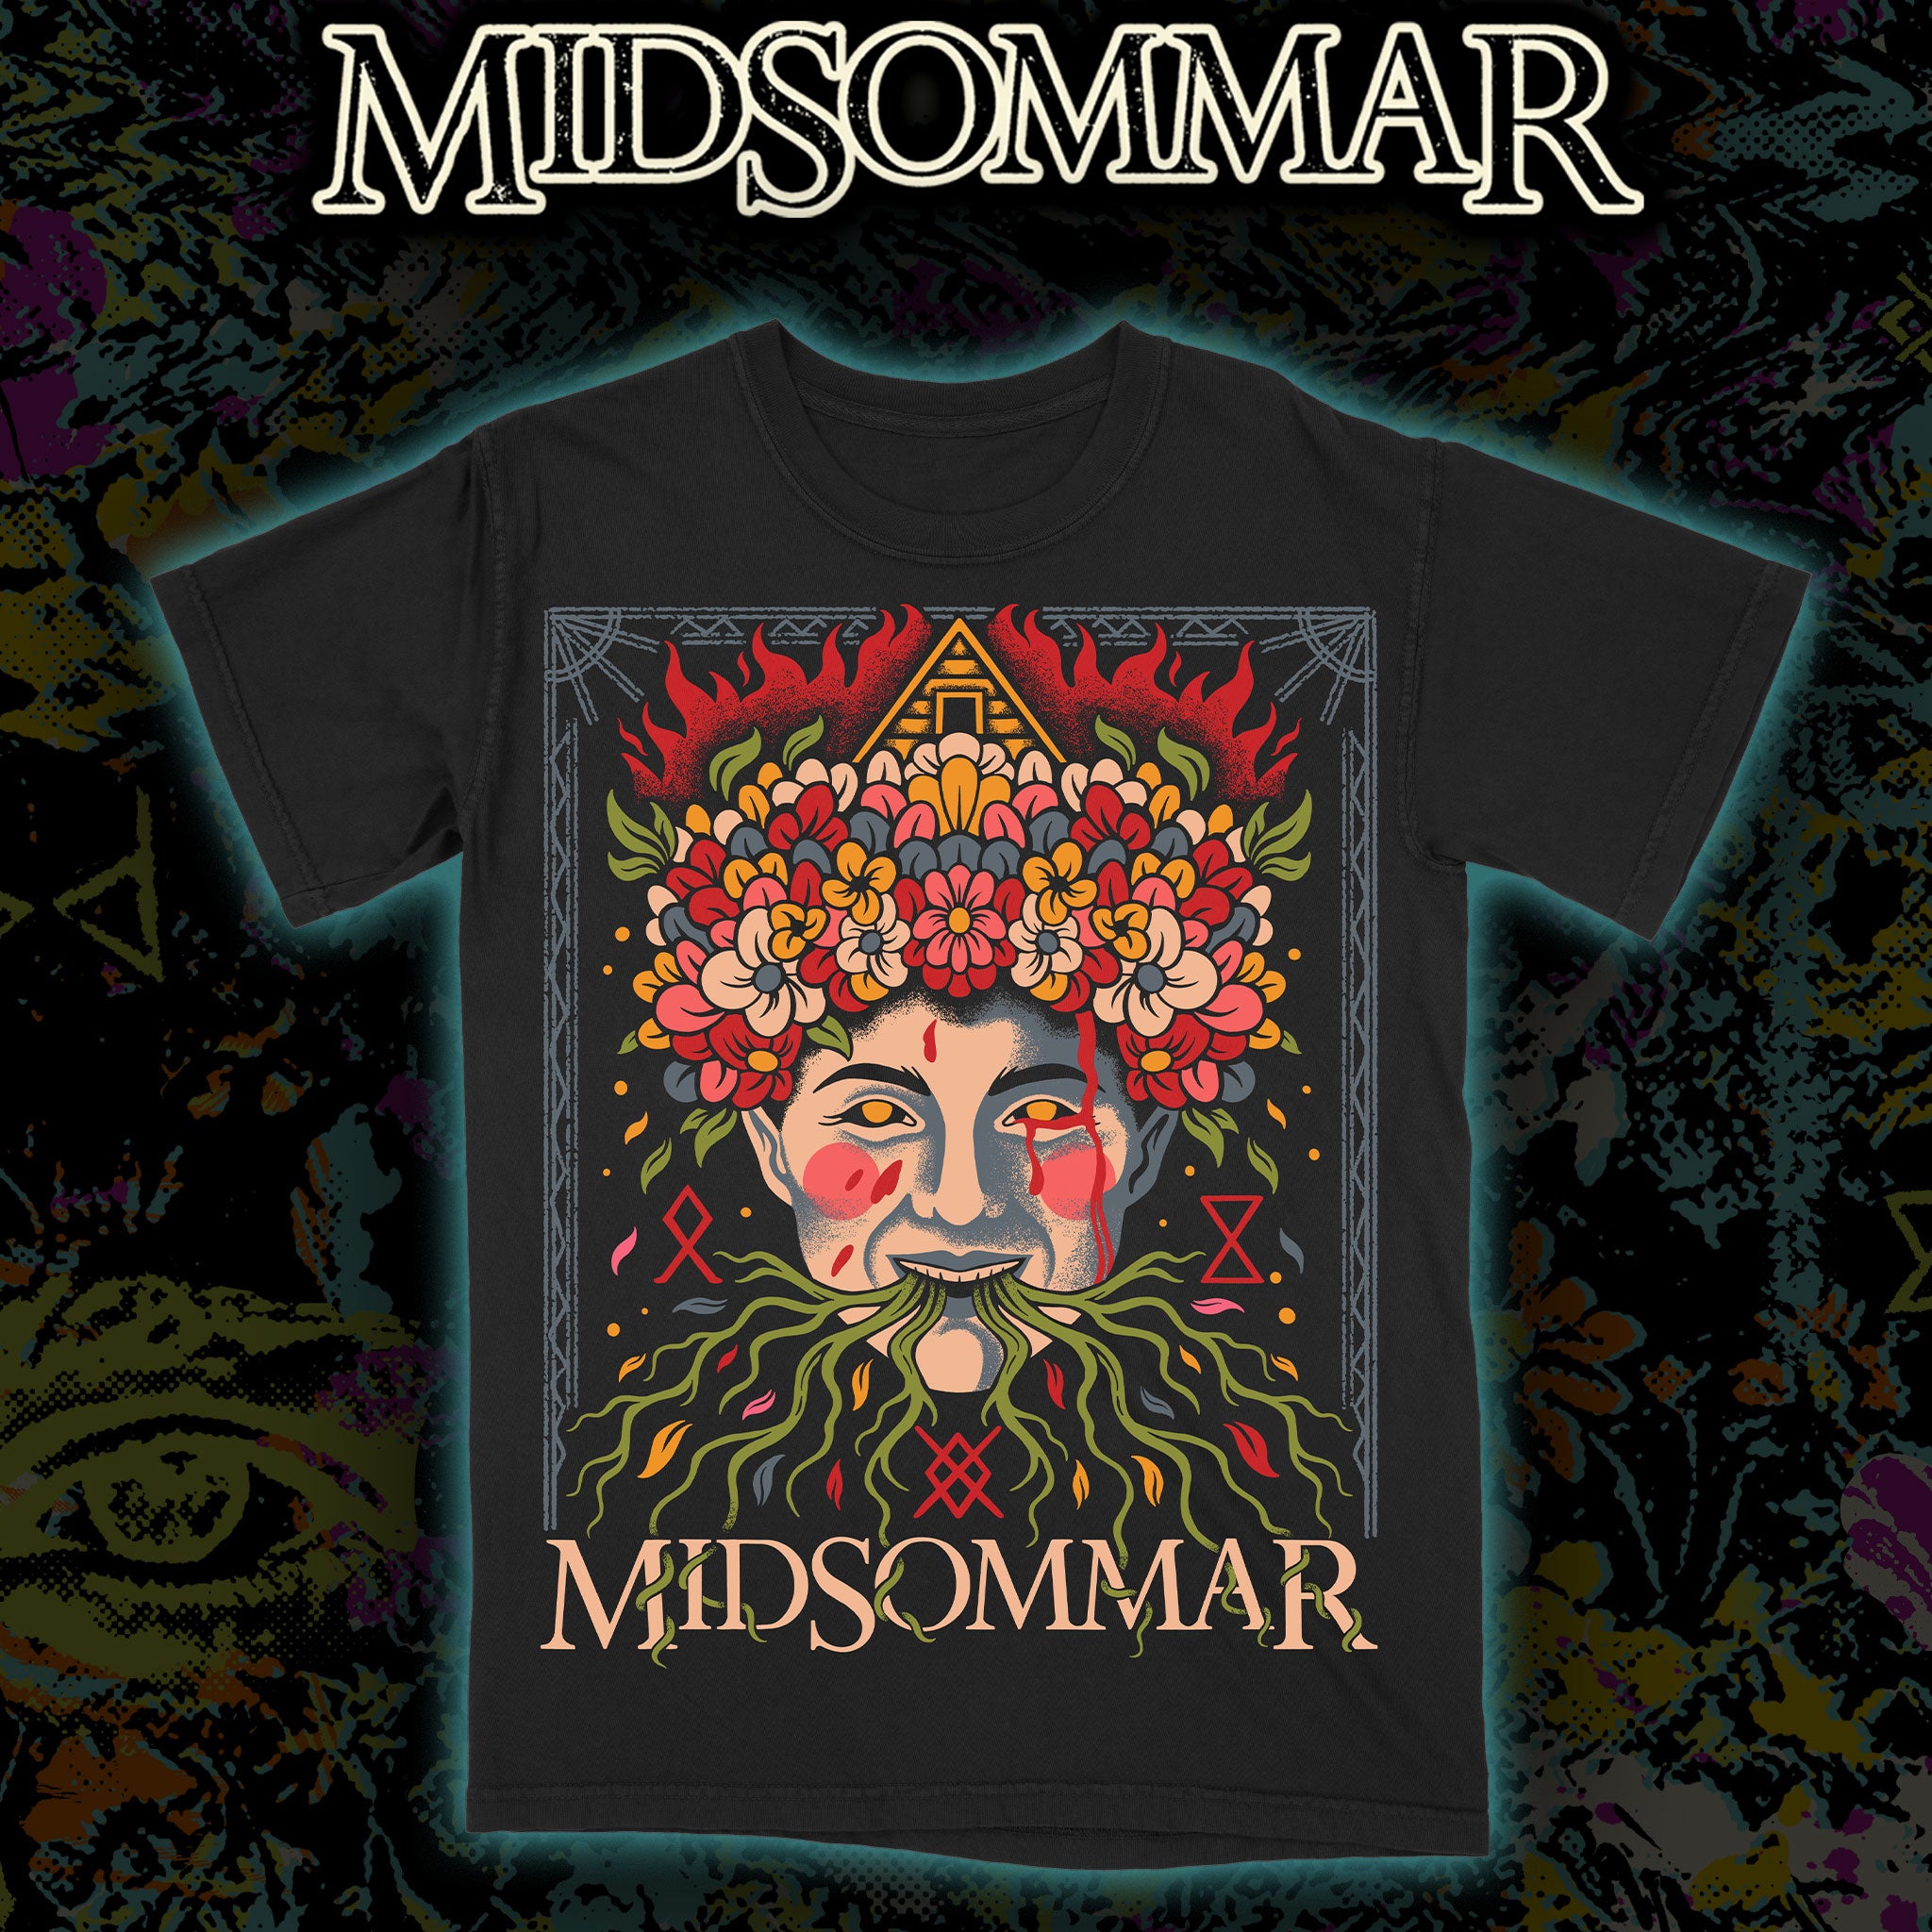 Midsommar "The May Queen" Premium tee